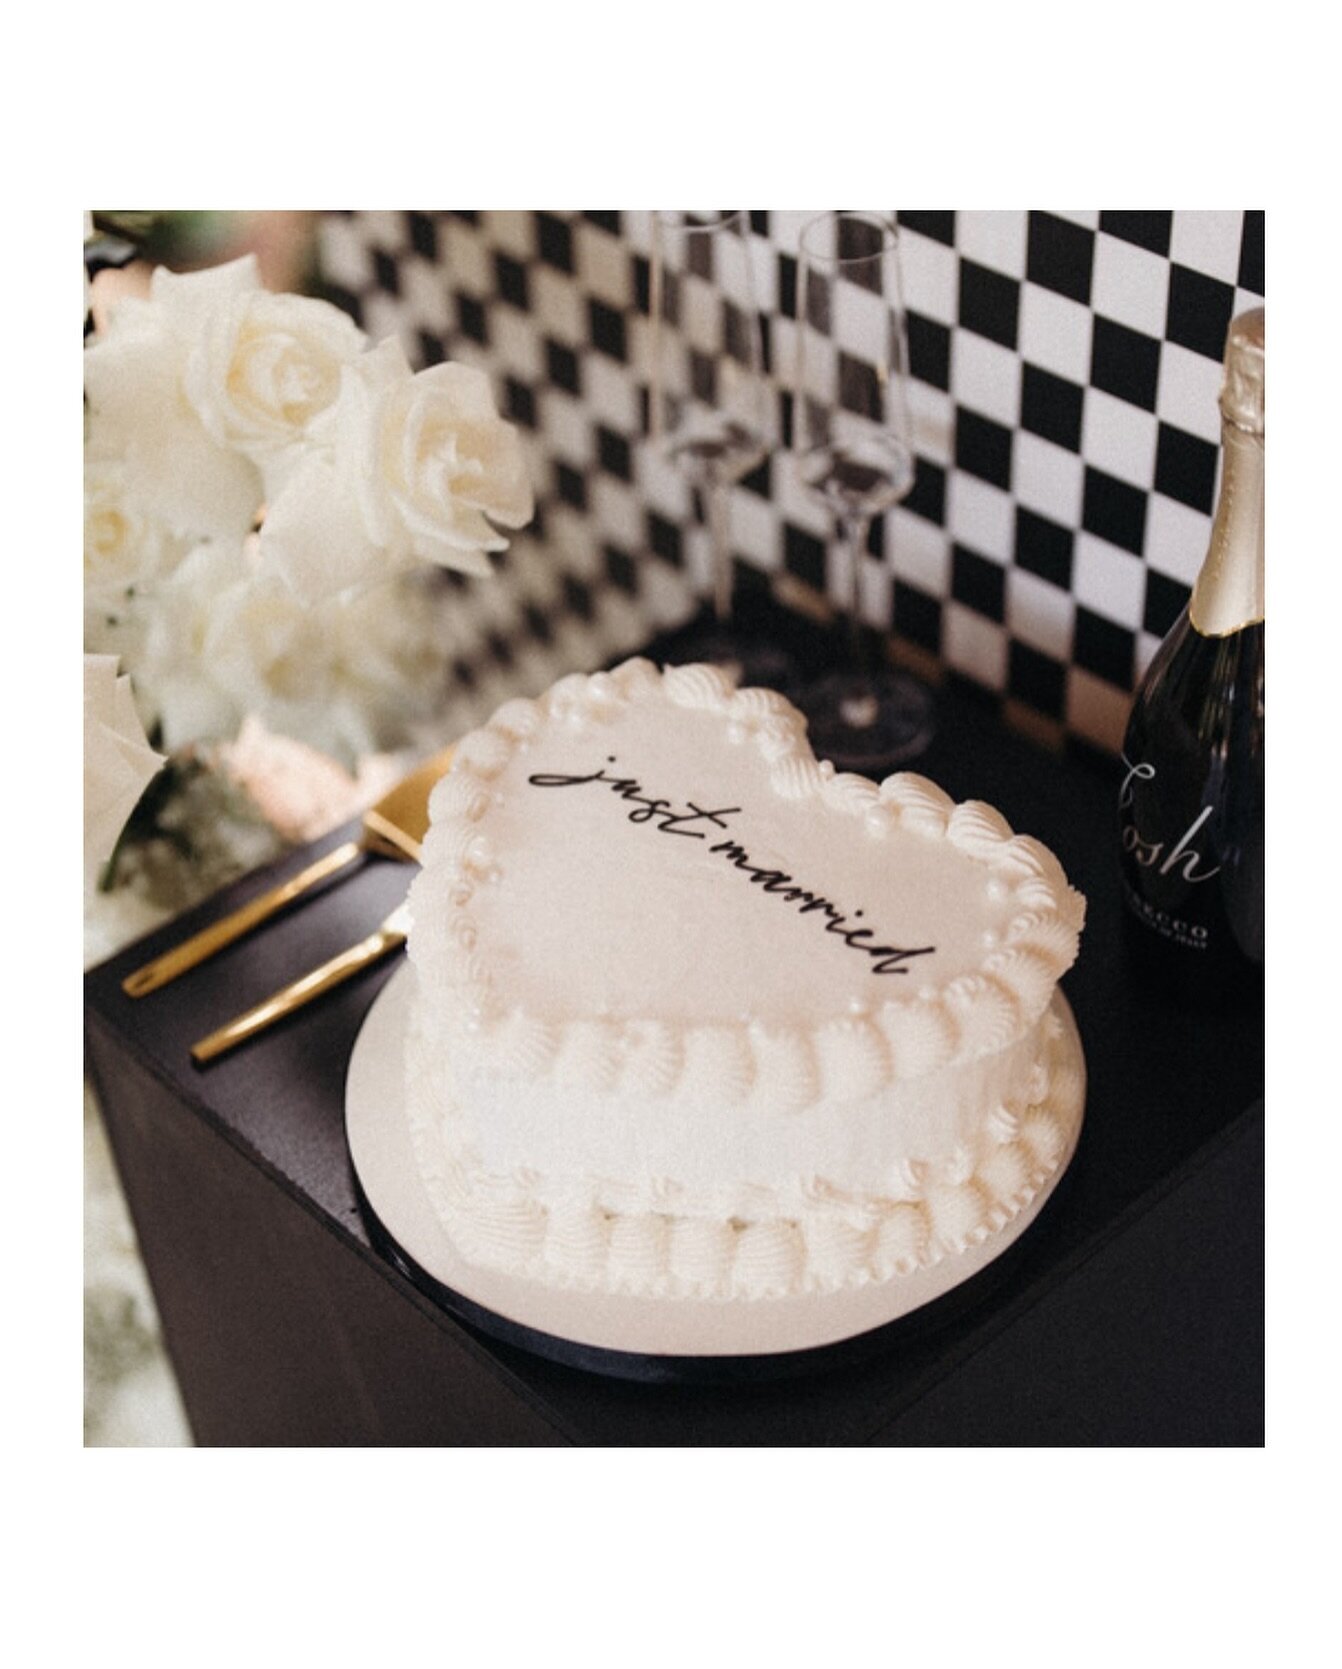 Let them eat cake! (Plz save me a slice) 🍰 

#ncweddingphotographer #travelingweddingphotographer #weddjngphotography #weddingcake #heartshappedcake